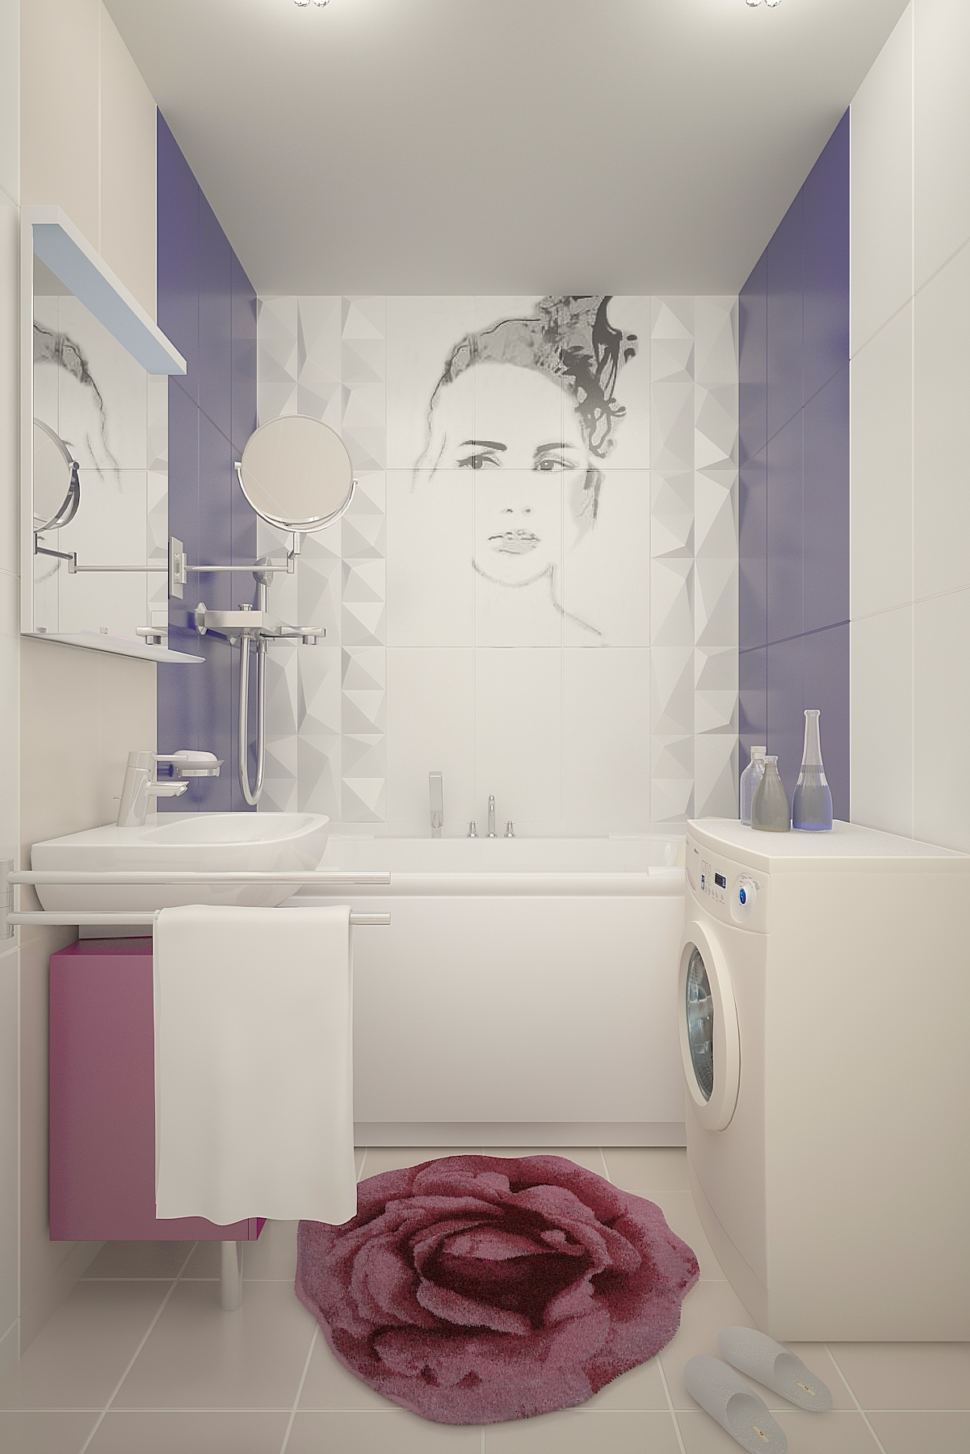 Дизайн ванной комнаты 3 кв.м в бежевых тонах с бледно-синими акцентами , подвесной унитаз, тумба, раковина, стиральная машинка